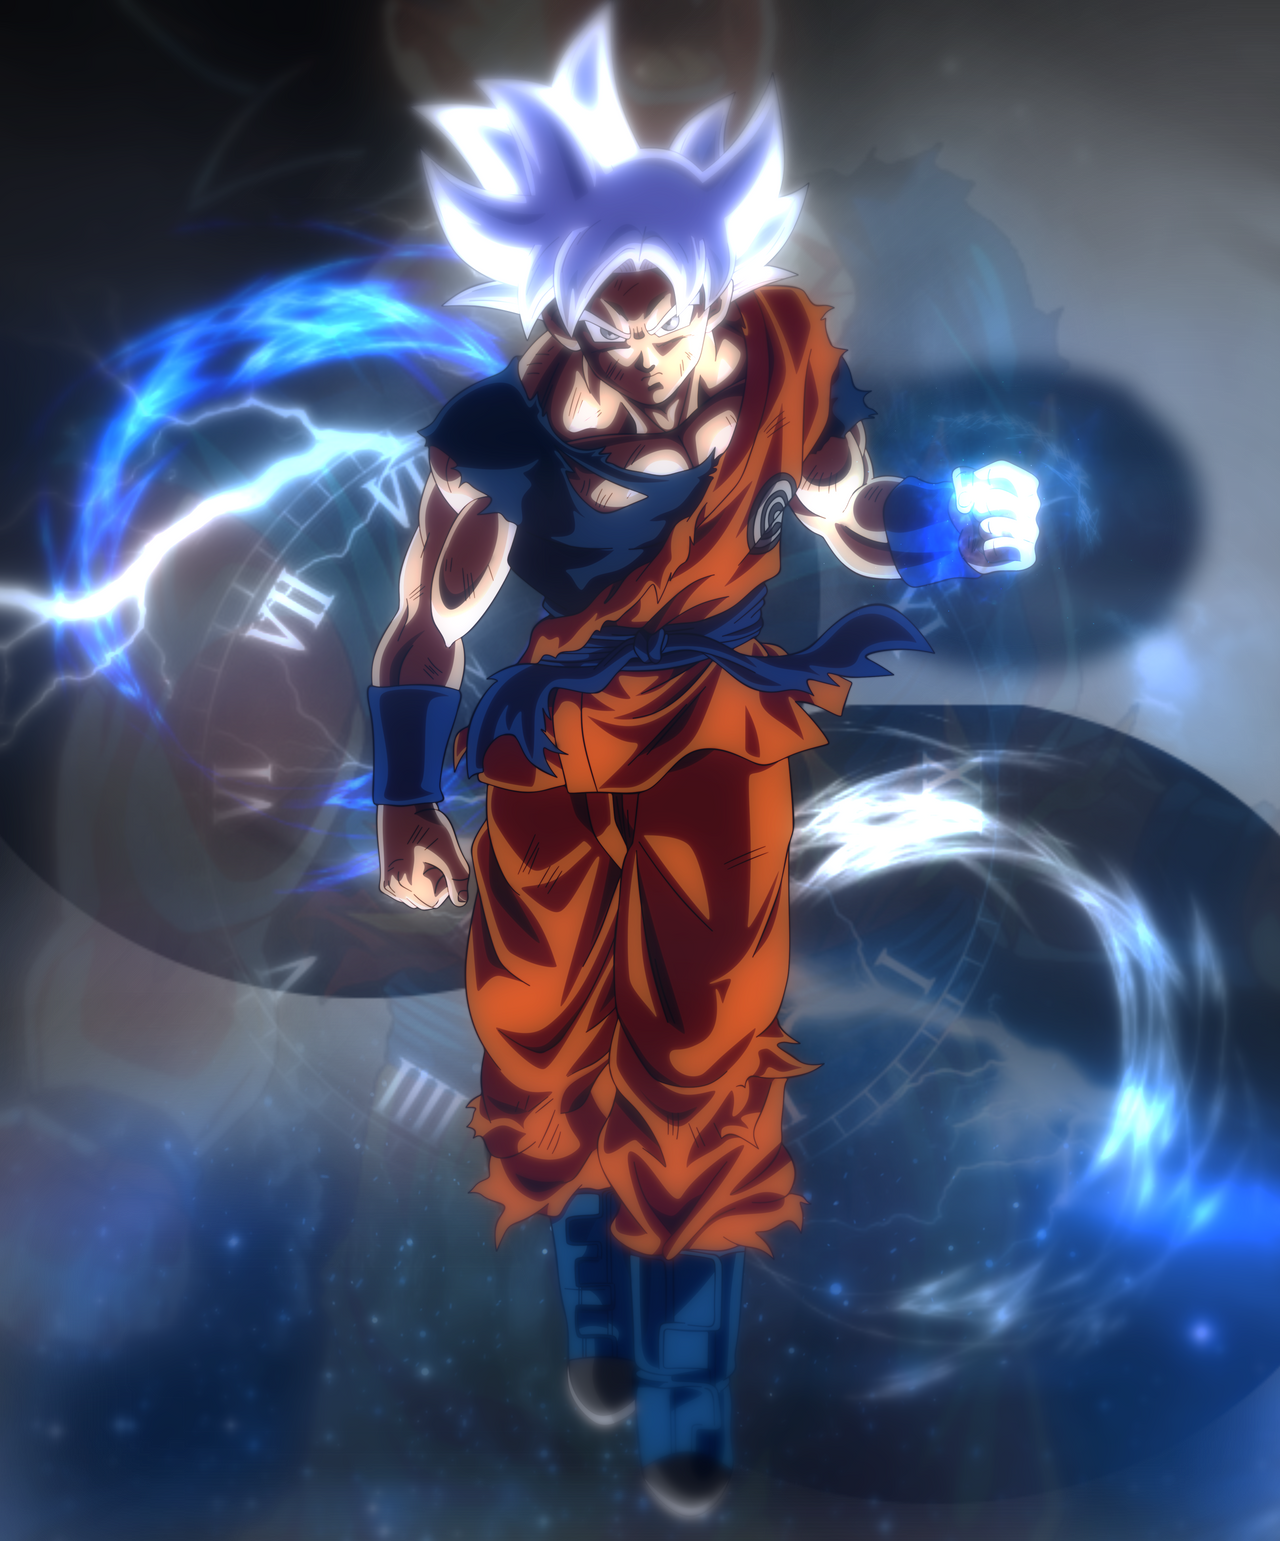 Ultra Instinct Goku Wallpaper by DarkMatterr on DeviantArt